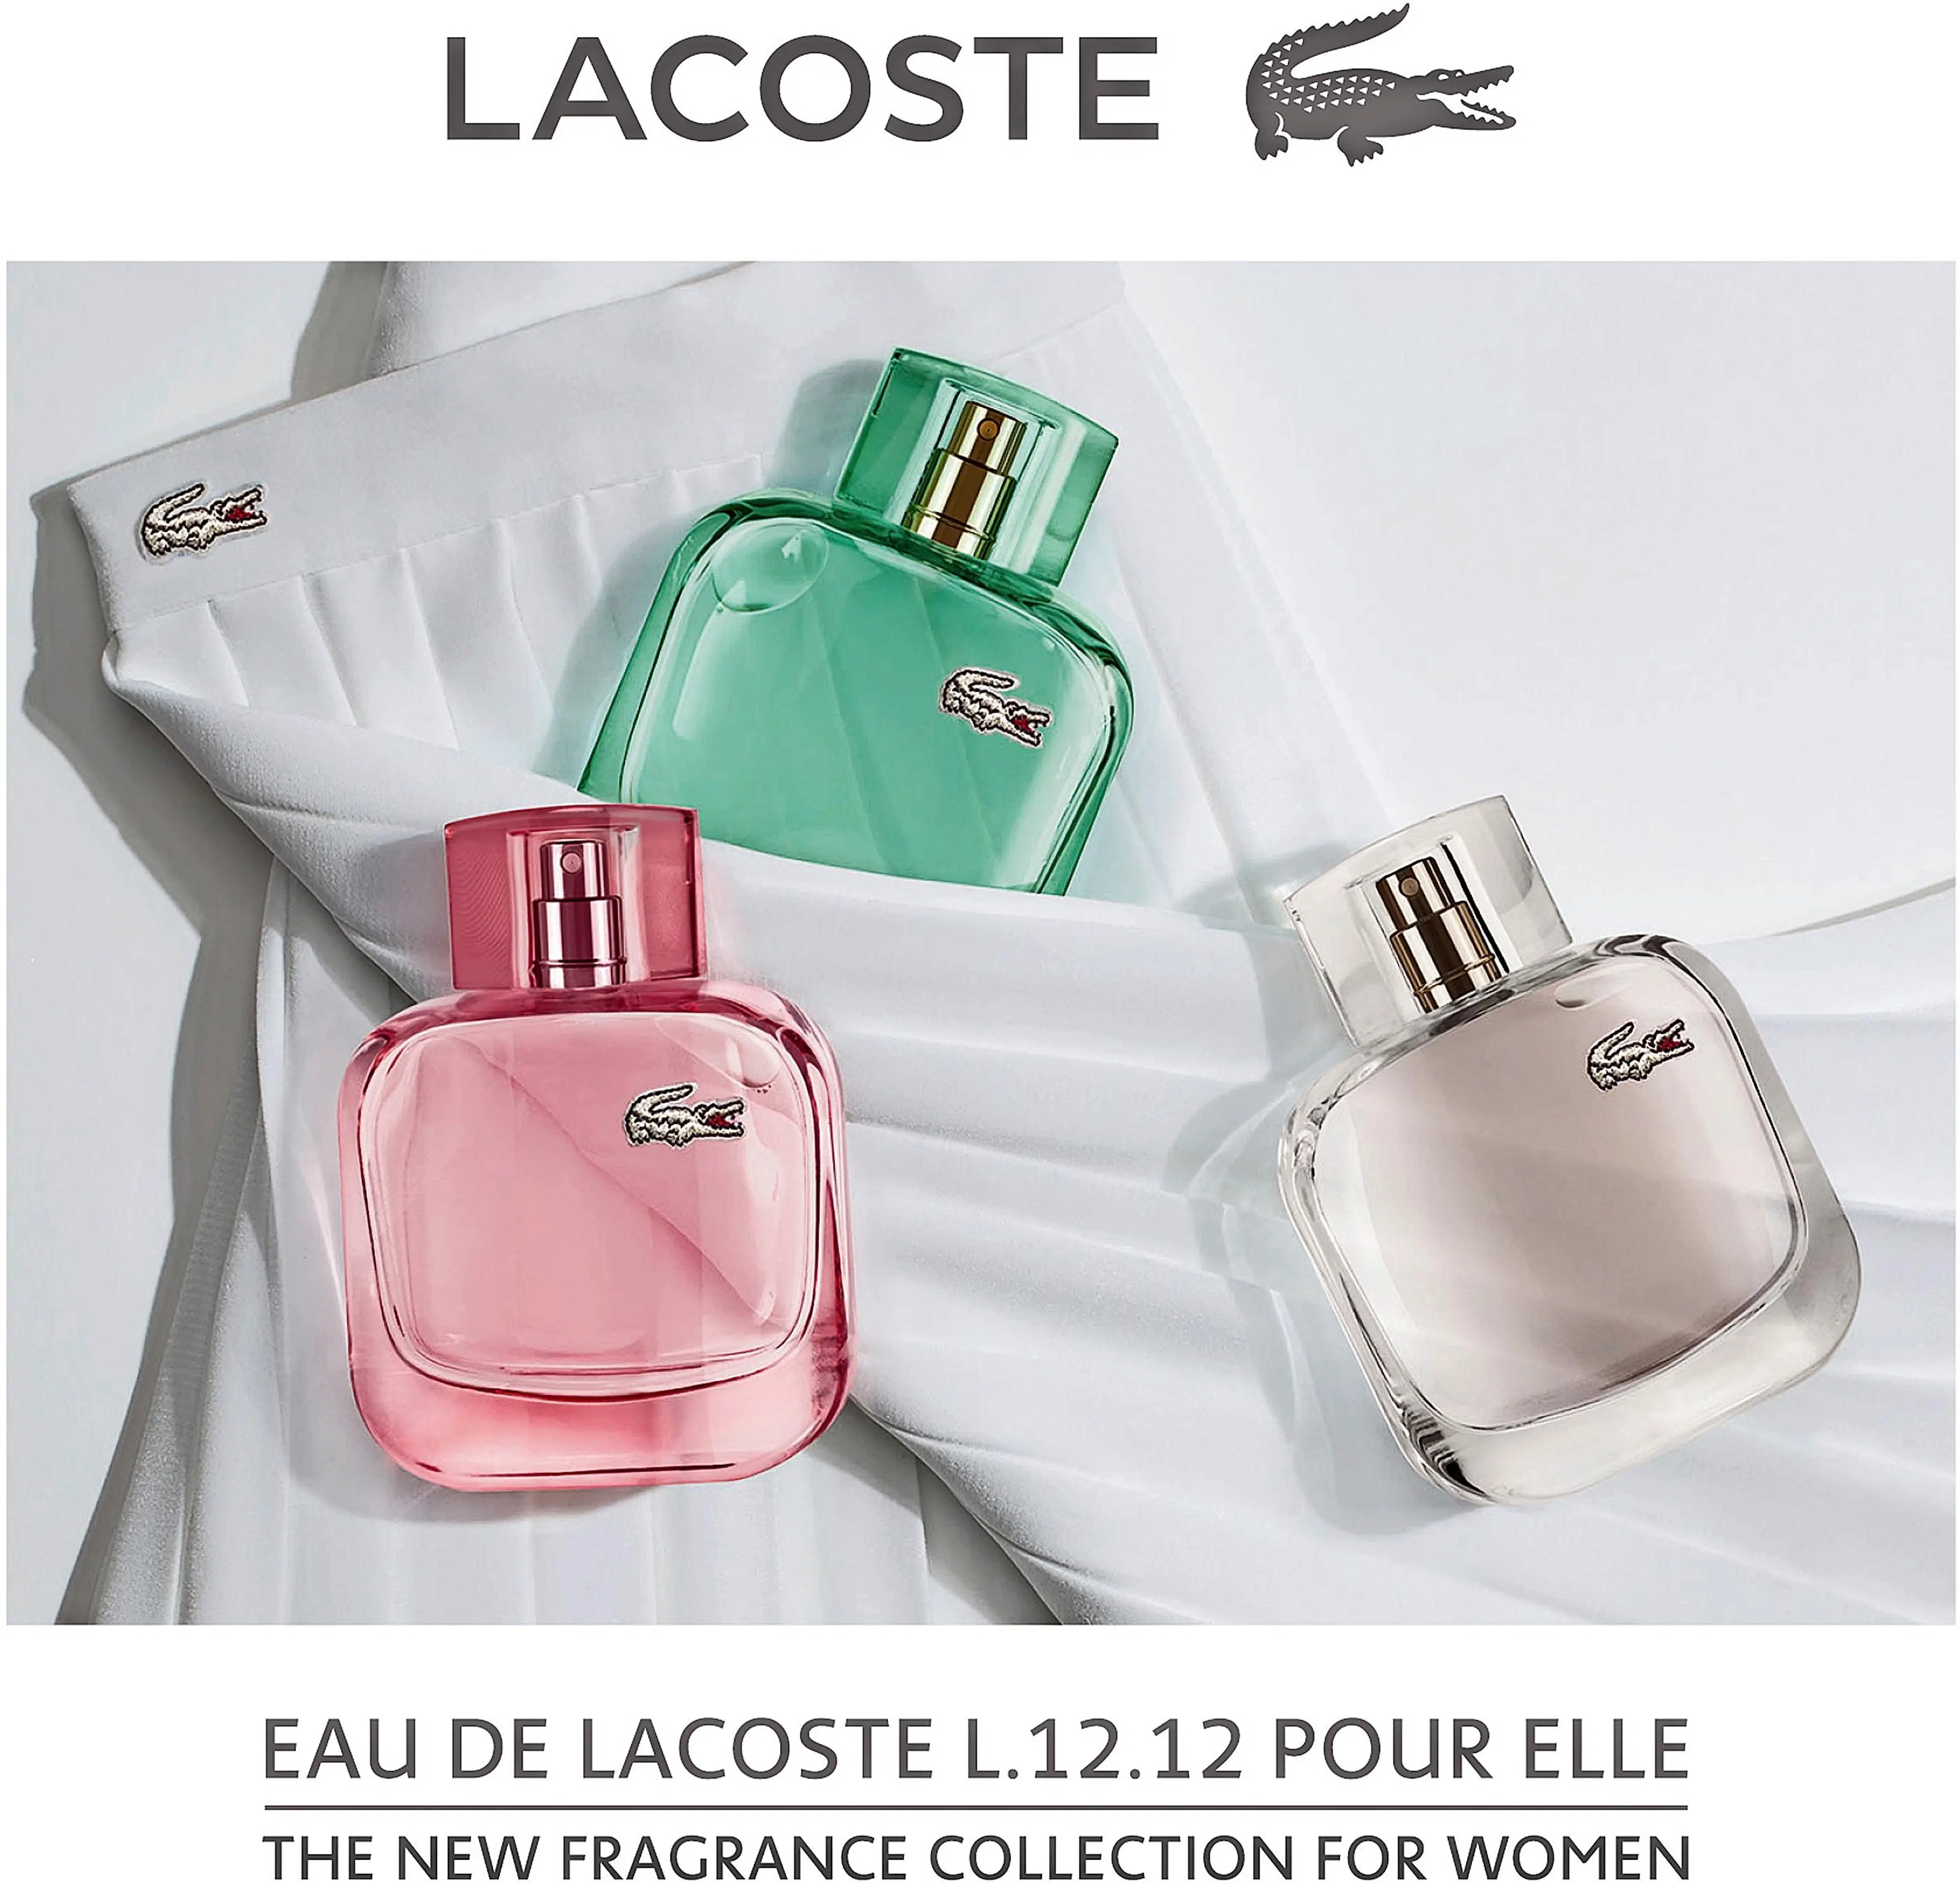 Lacoste L.12.12 Pour Elle Sprakling for Women EdT tuoksu 30 ml